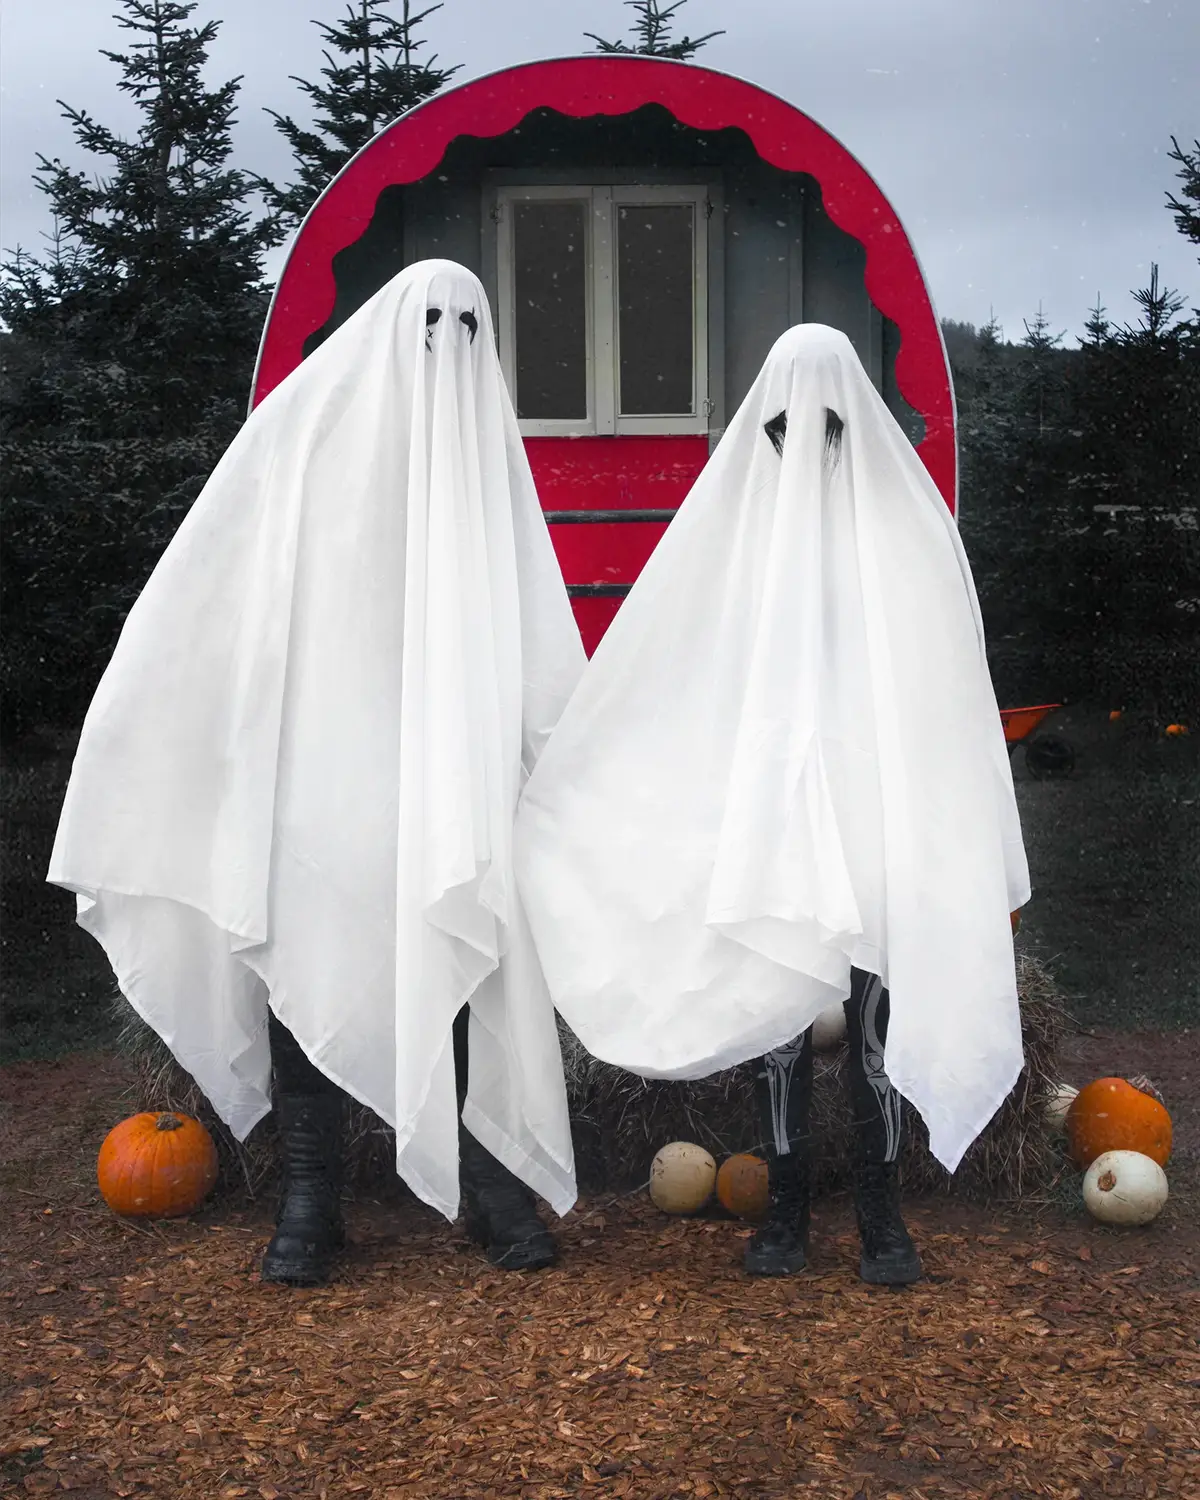 𝕬𝖑𝖑 𝖍𝖆𝖑𝖑𝖔𝖜𝖘 𝖊𝖛𝖊 𝖎𝖘 𝖙𝖍𝖊 𝖔𝖓𝖊 𝖓𝖎𝖌𝖍𝖙 𝖔𝖋 𝖙𝖍𝖊 𝖞𝖊𝖆𝖗 𝖜𝖍𝖊𝖗𝖊 𝖙𝖍𝖊 𝖘𝖕𝖎𝖗𝖎𝖙𝖘 𝖔𝖋 𝖙𝖍𝖊 𝖉𝖊𝖆𝖉 𝖈𝖆𝖓 𝖗𝖔𝖆𝖒 𝖆𝖒𝖔𝖓𝖌𝖘𝖙 𝖙𝖍𝖊 𝖑𝖎𝖛𝖎𝖓𝖌!  🎃 𝕳𝖆𝖕𝖕𝖞 𝕳𝖆𝖑𝖑𝖔𝖜𝖊𝖊𝖓! 🎃 #halloween #pumpkin #pumpkins #ghost #ghosts #goth #gothic #randomgothcouple #samhain #gothfashion #goths #halloweencostume #pumpkinpatch 